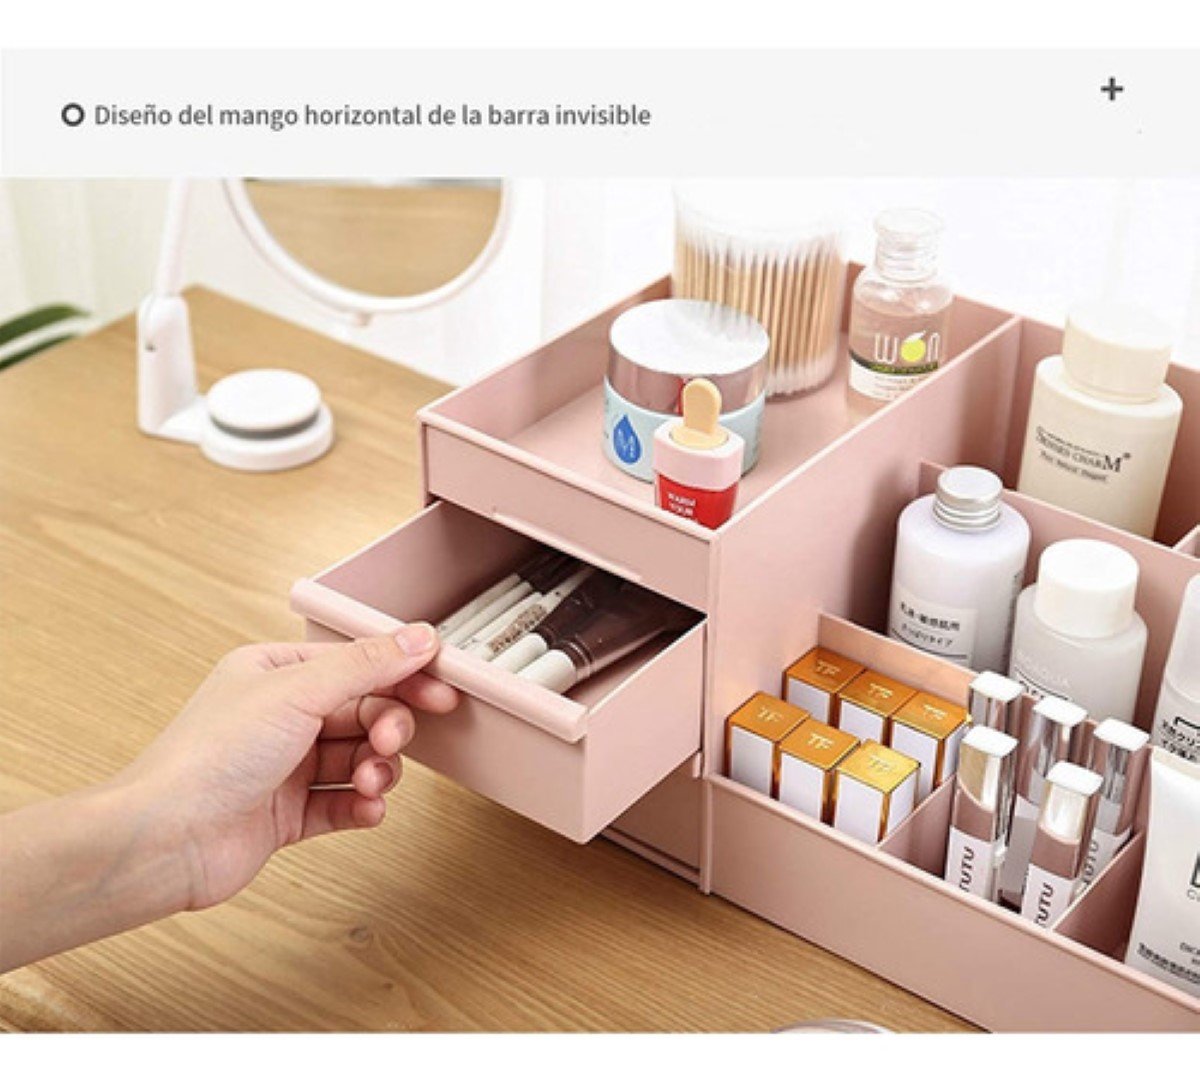 Caja Organizadora Maquillaje Con Gavetas De Multifuncional, Rosa